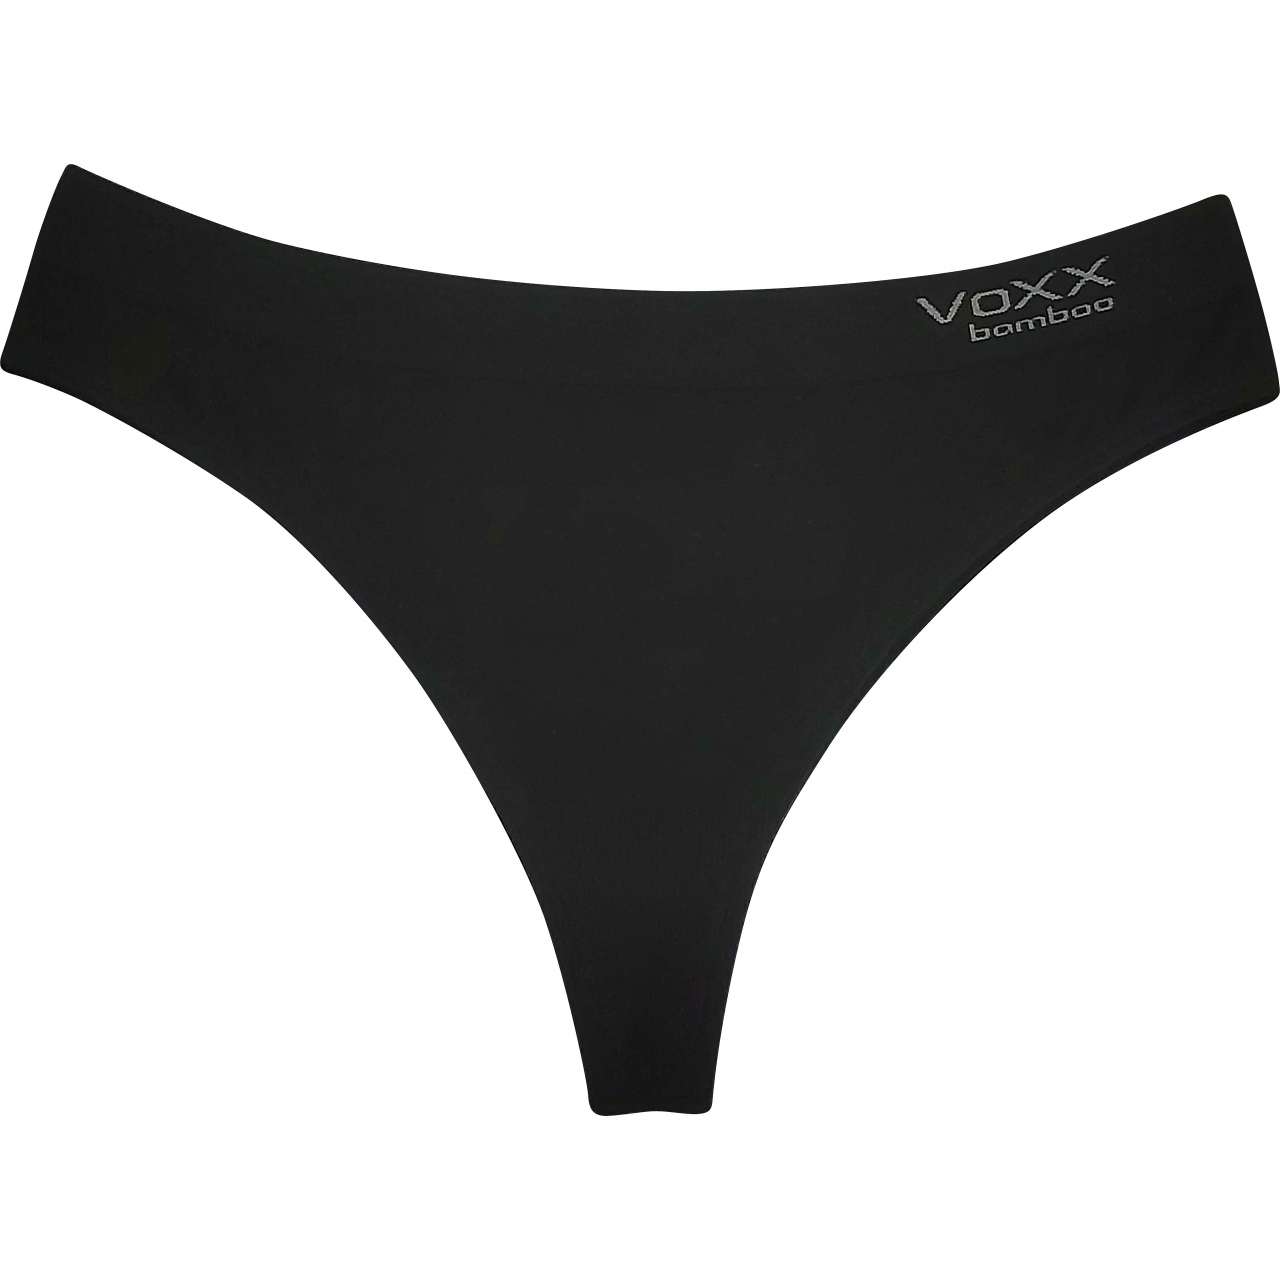 Kalhotky dámské Voxx BambooSeamless 006 - černé, S/M